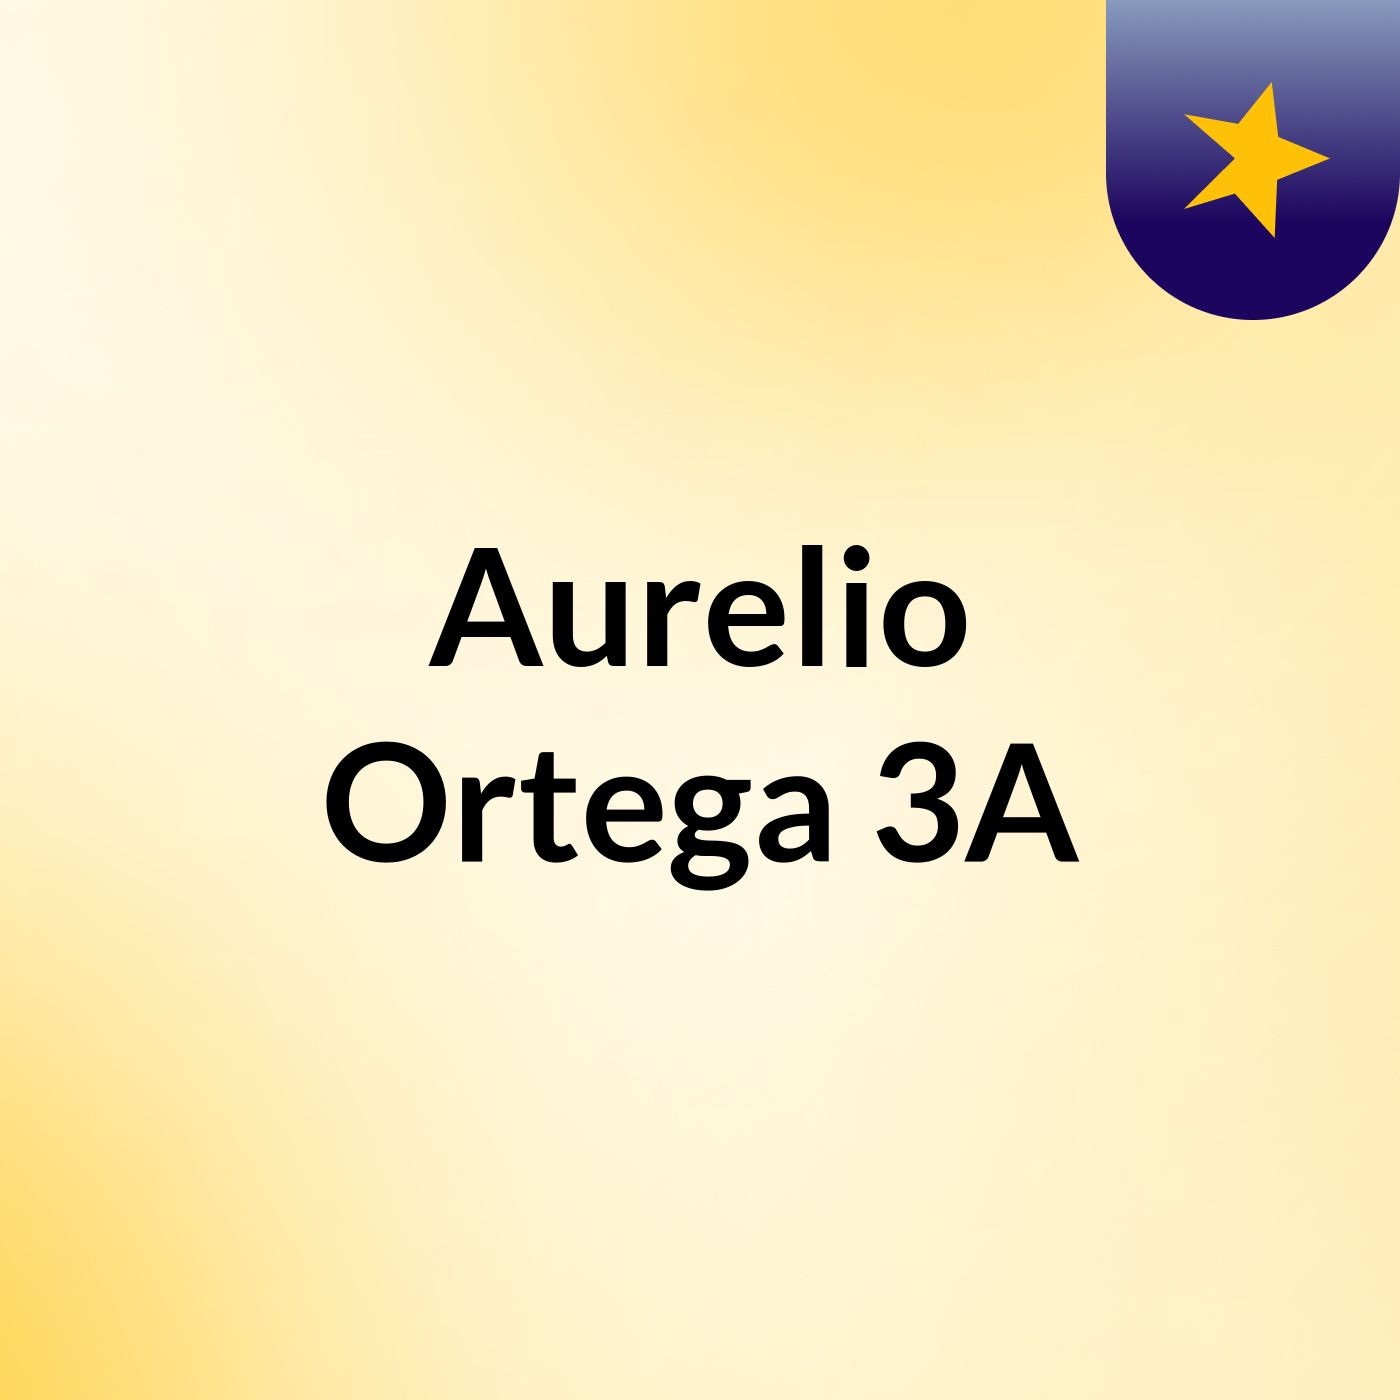 Aurelio Ortega 3A